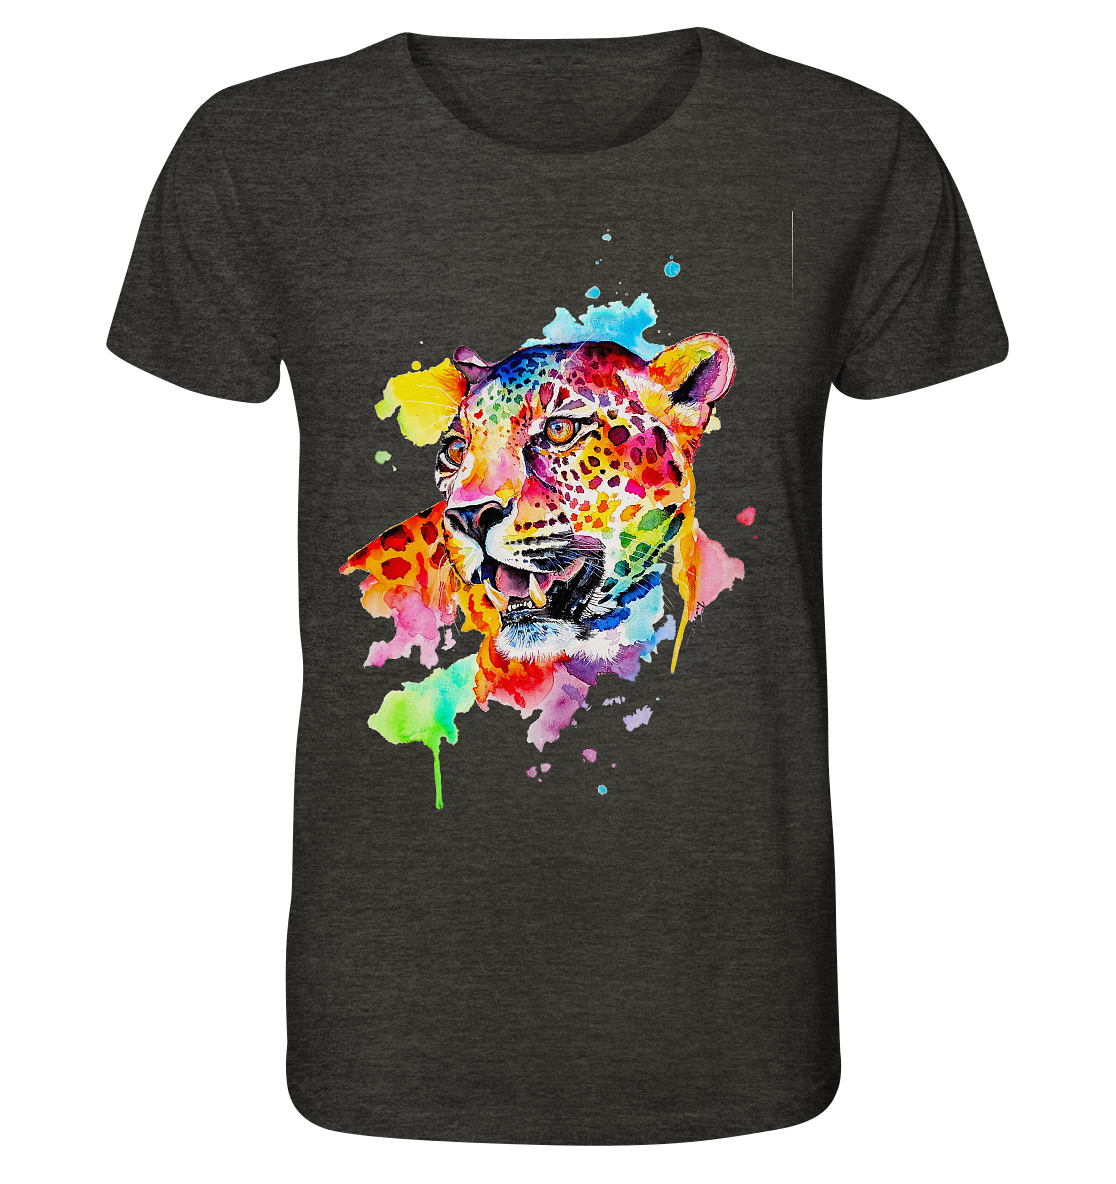 Bunter Leopard  - Organic Shirt (meliert)